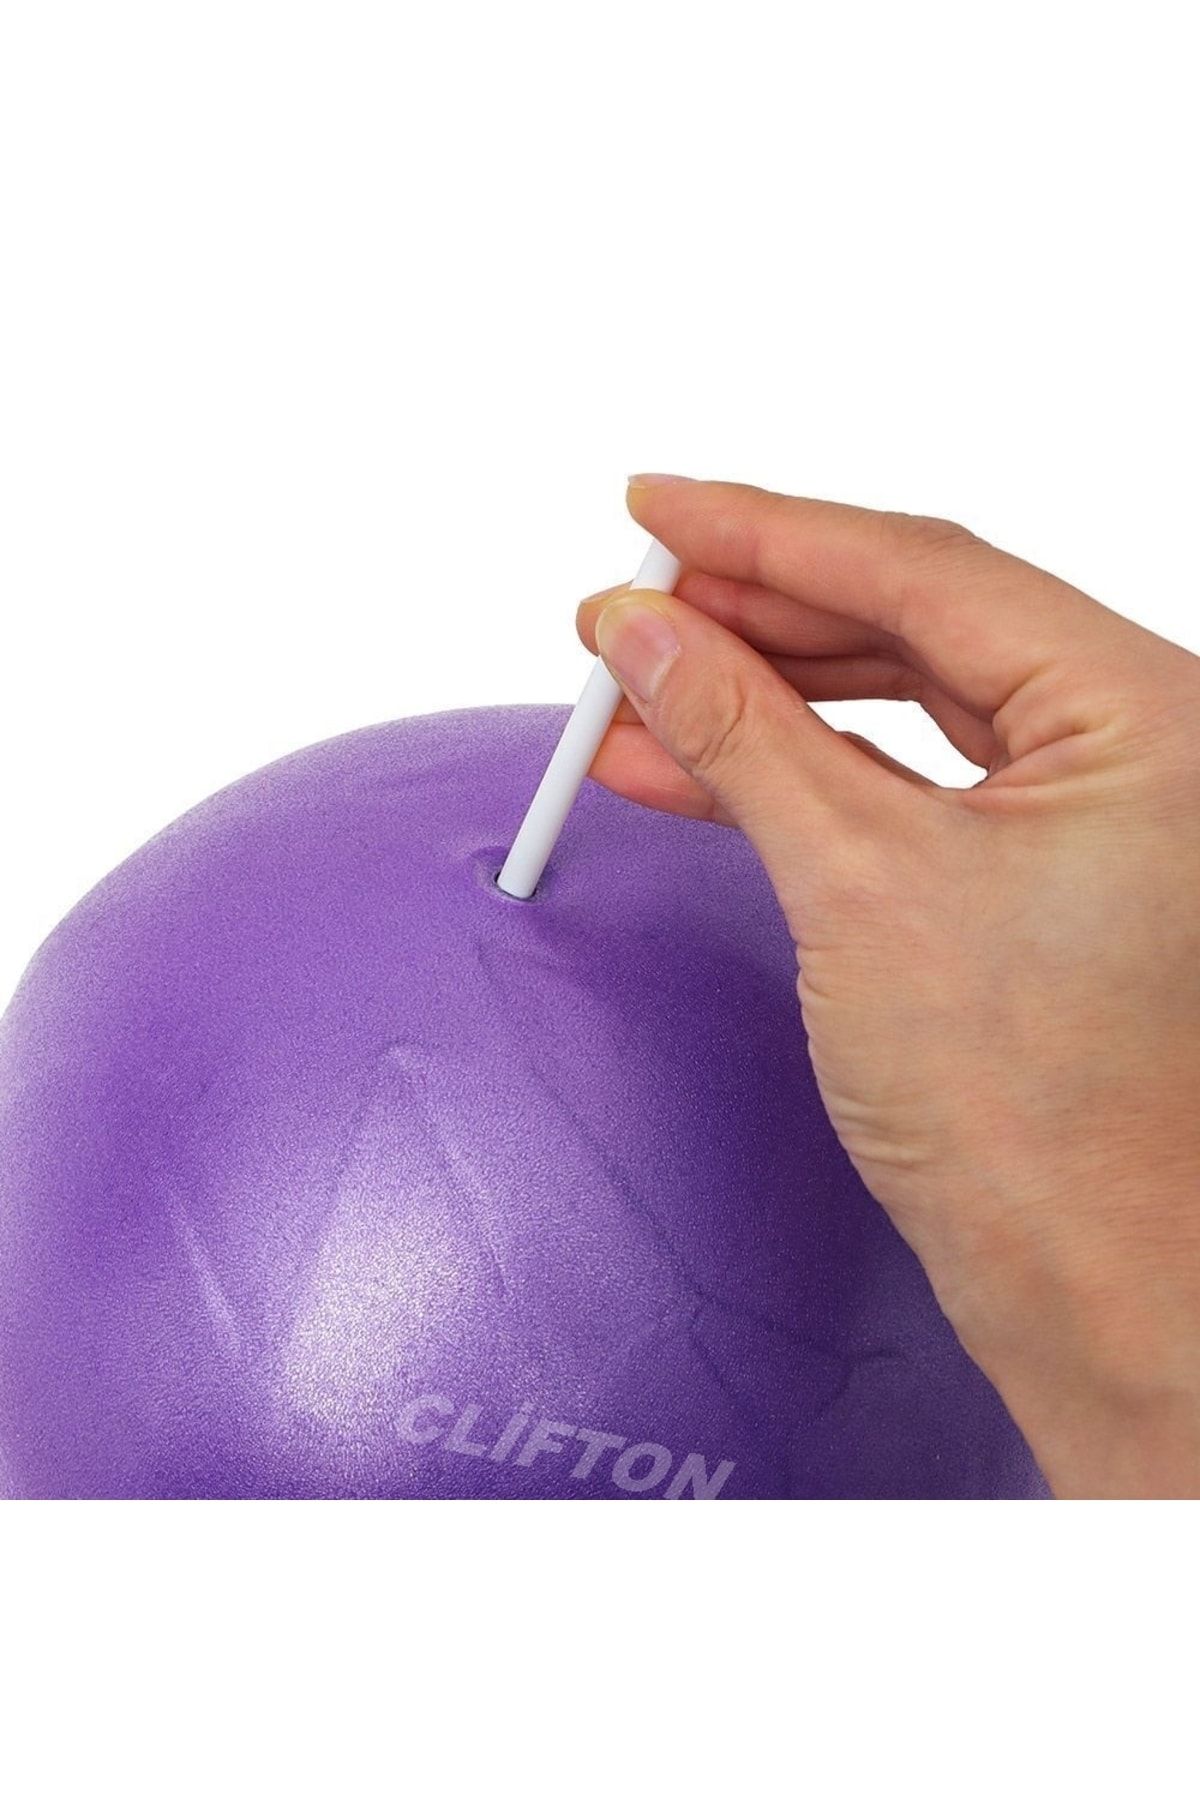 Clifton 20 Cm Mini Pilates Topu Jimnastik Yoga Plates Egzersiz Topu